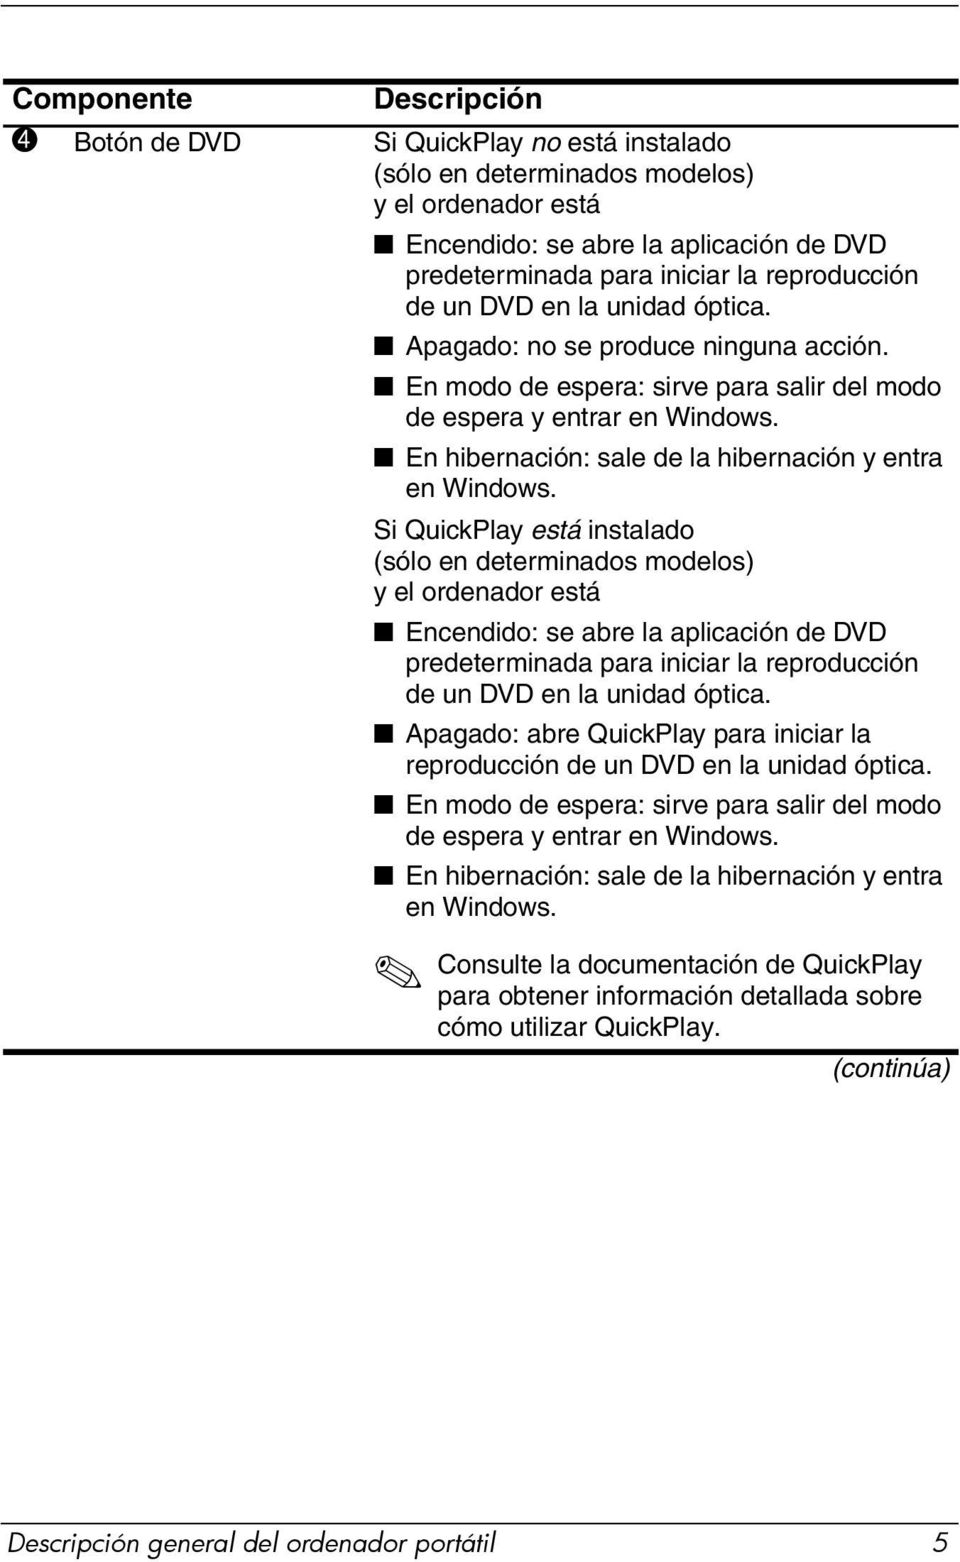 Si QuickPlay está instalado (sólo en determinados modelos) y el ordenador está Encendido: se abre la aplicación de DVD predeterminada para iniciar la reproducción de un DVD en la unidad óptica.